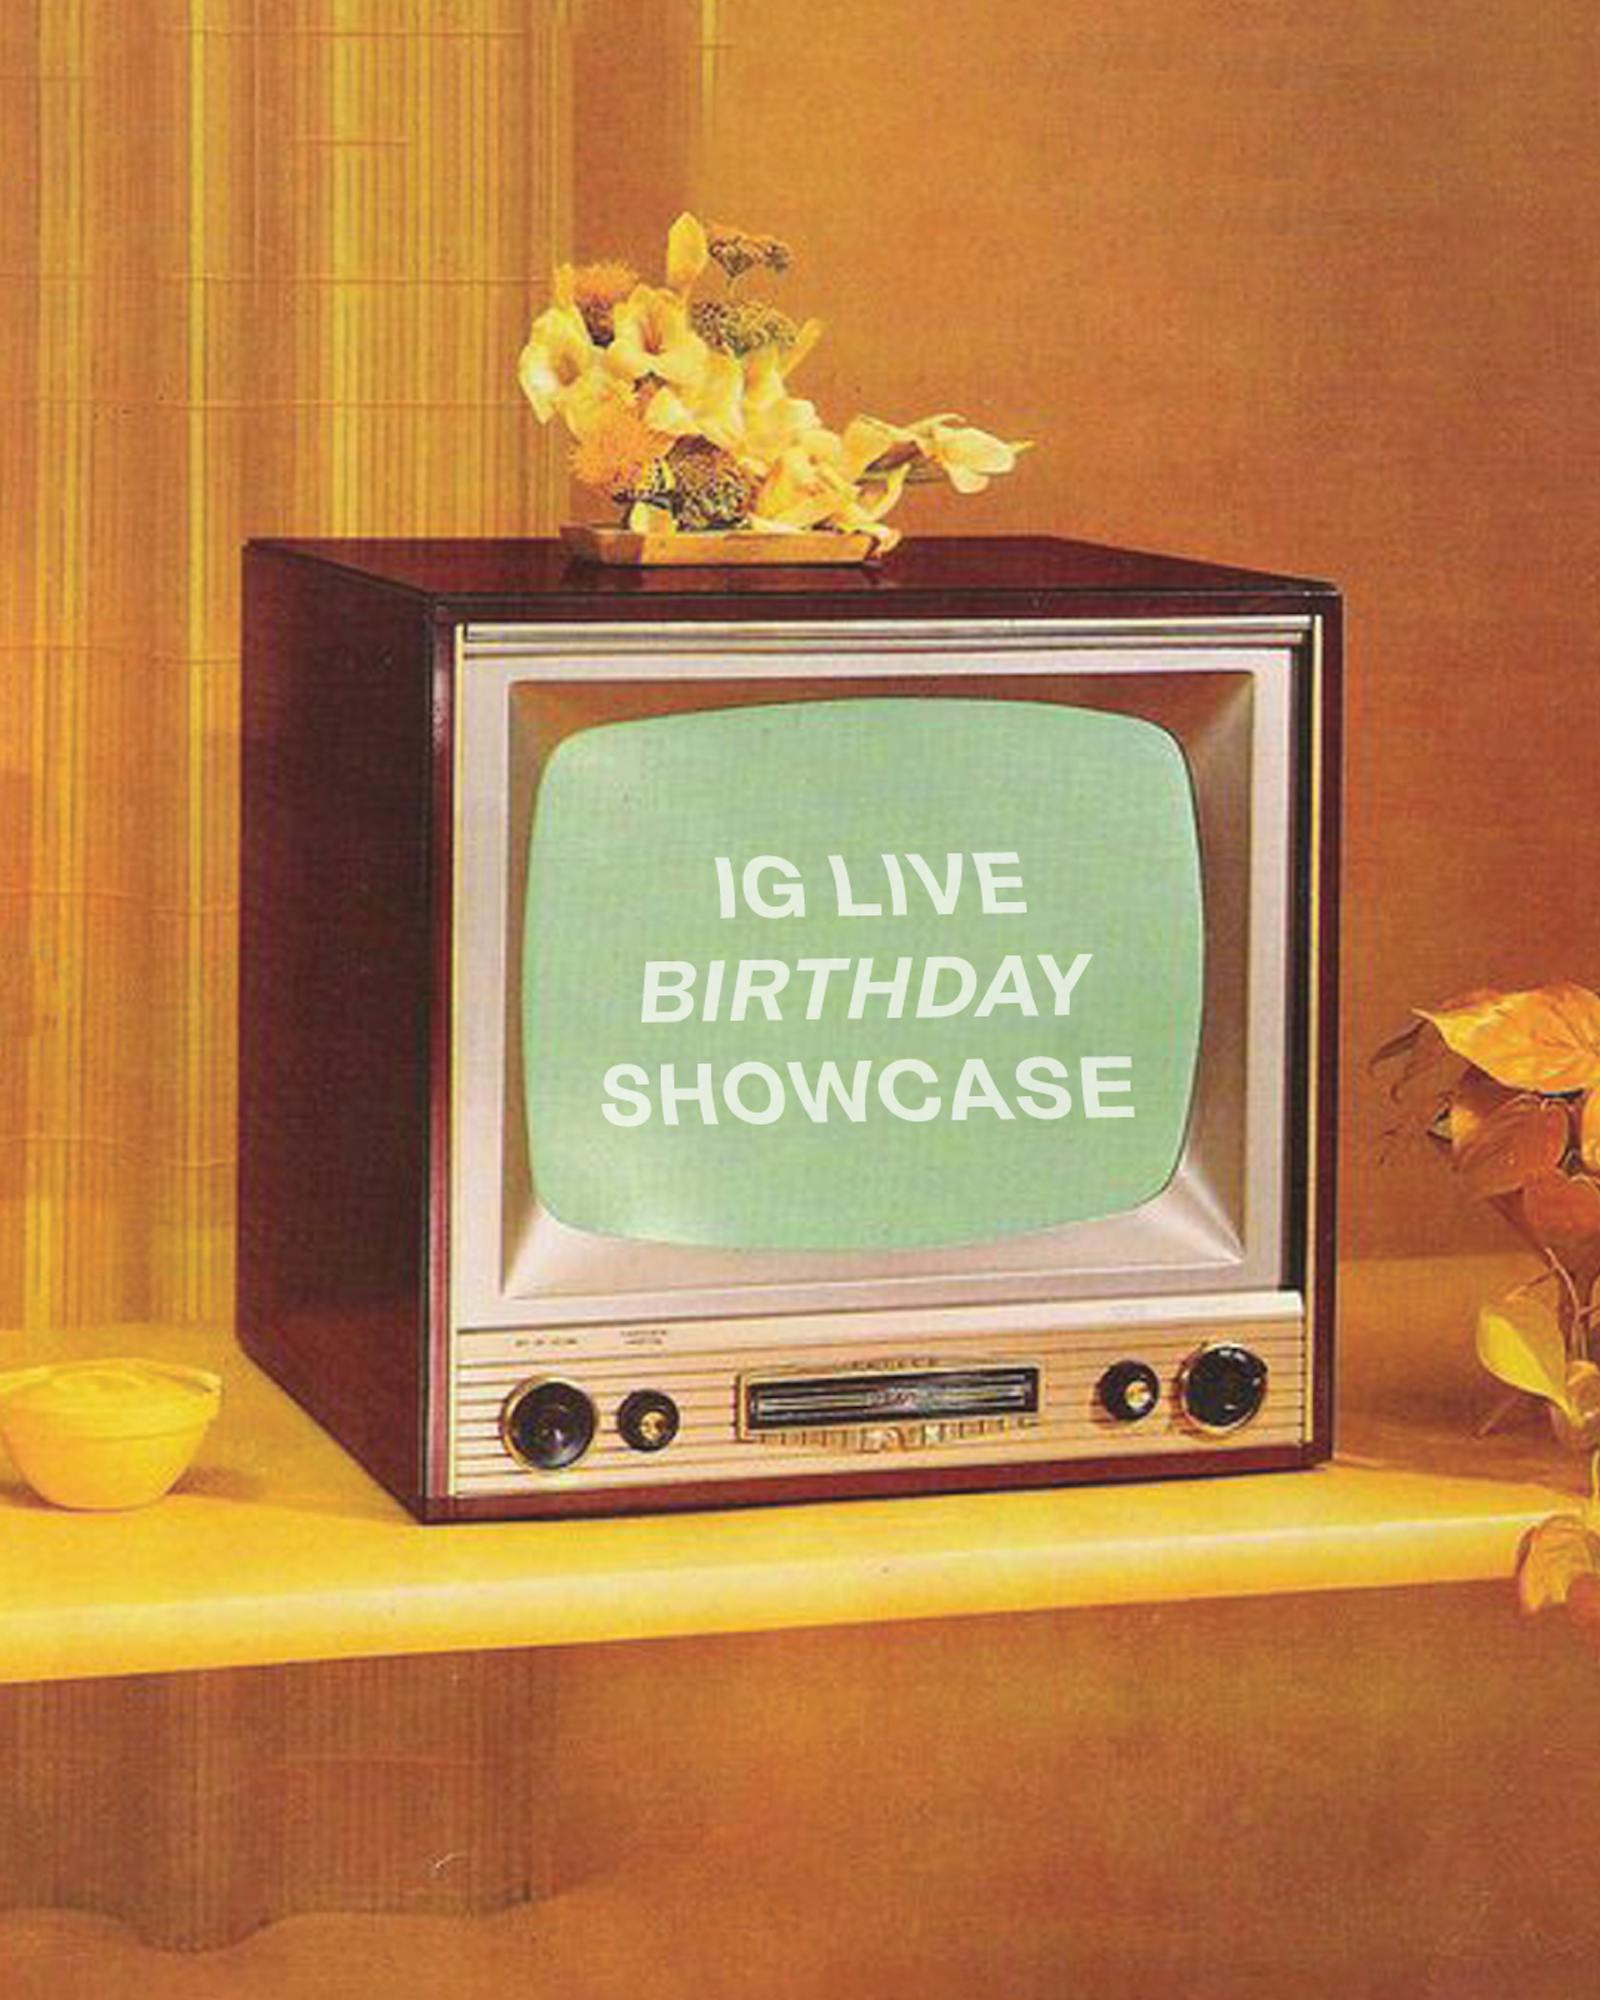 Live Showcase & Birthday Celebration! 🎉